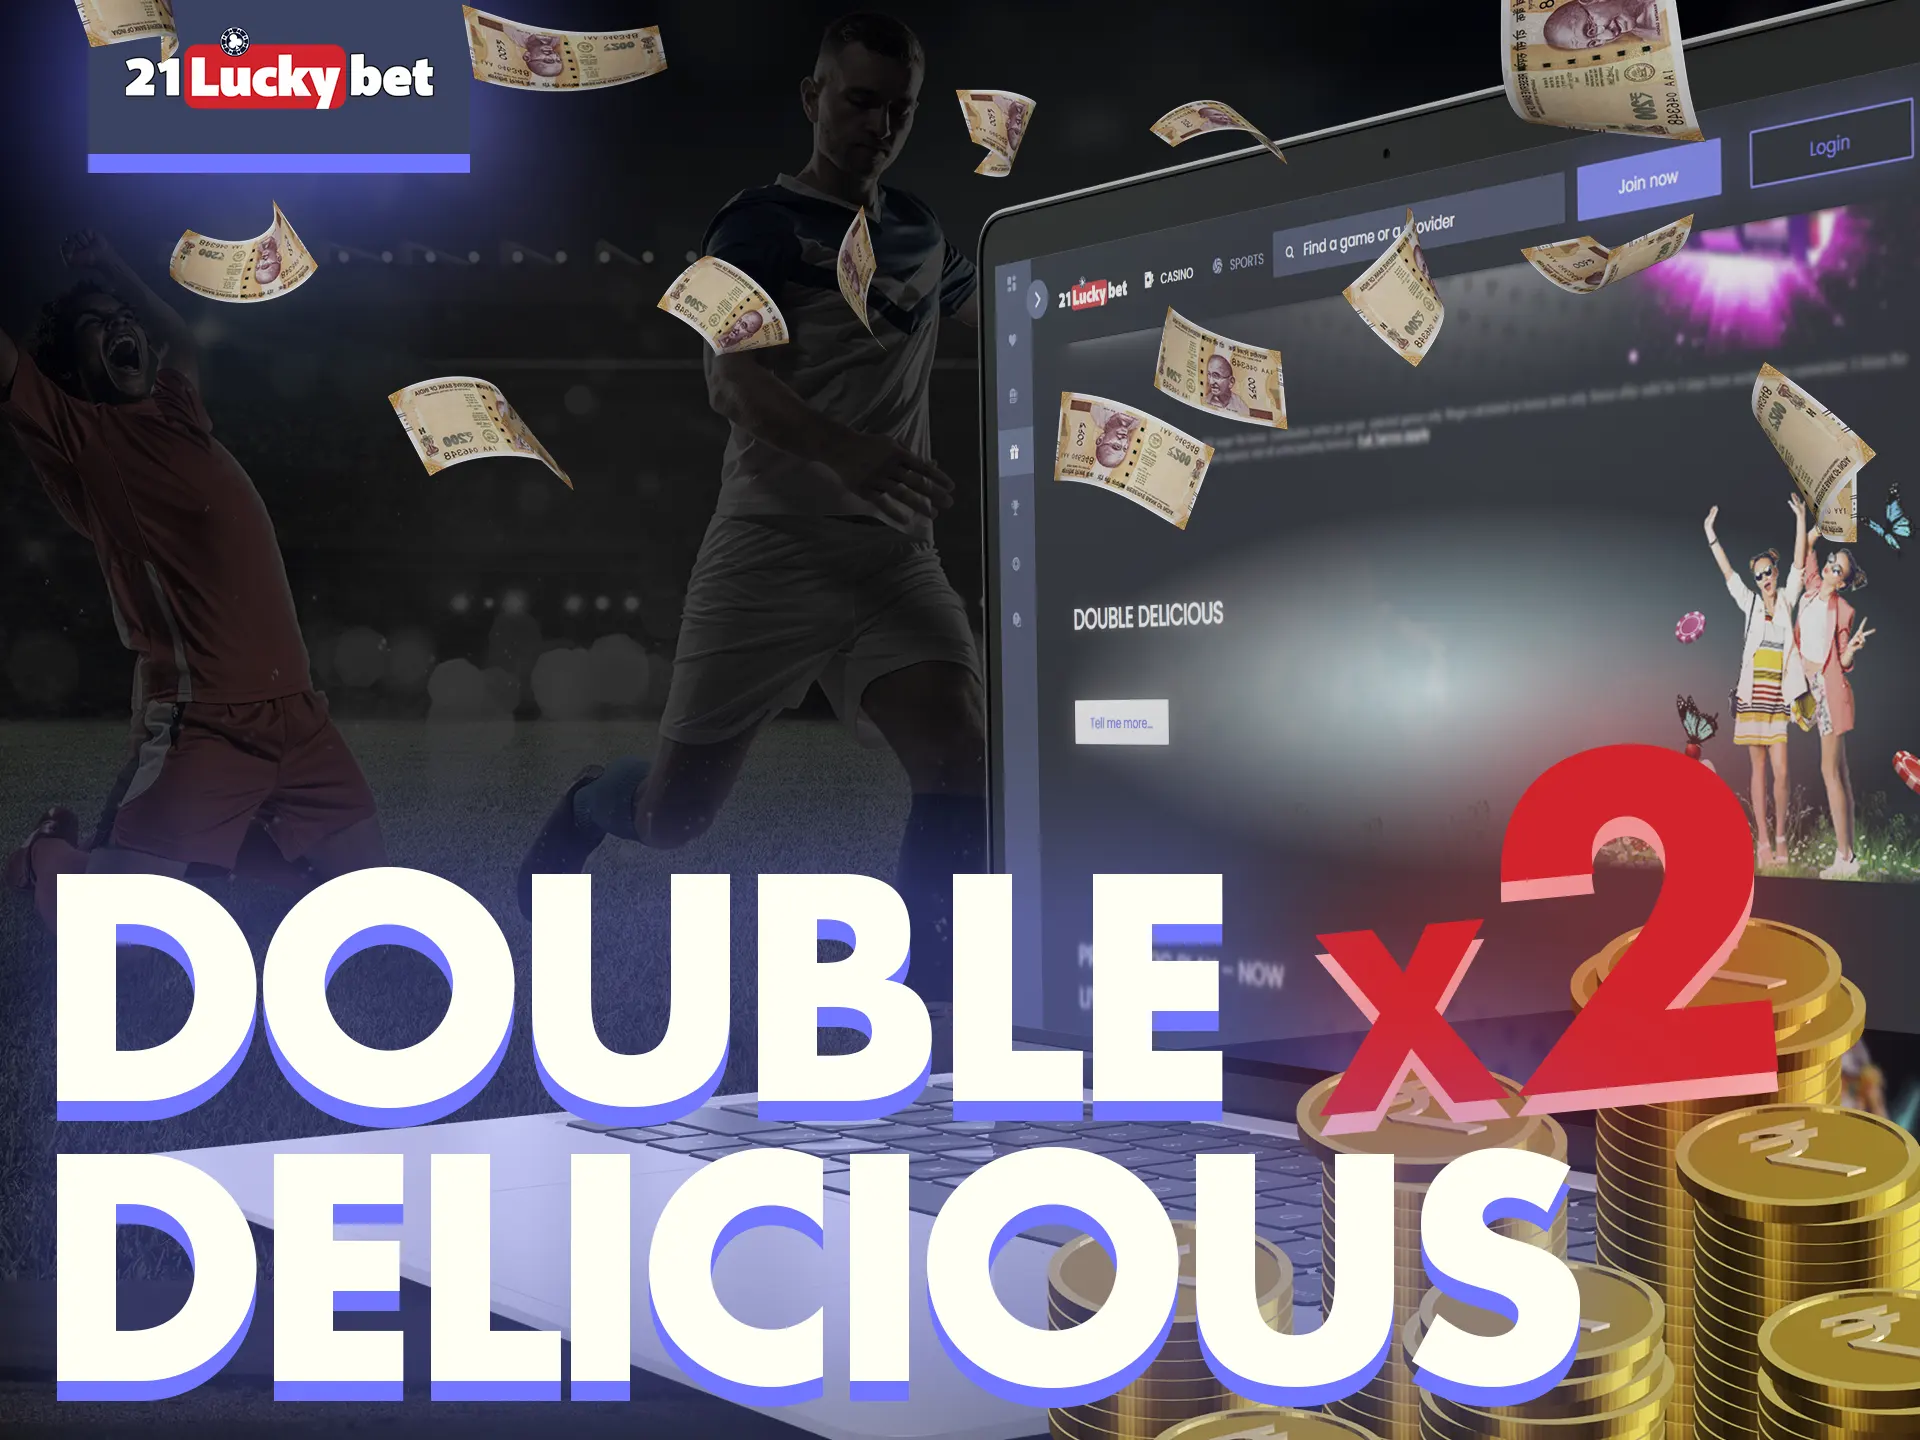 Get 21luckybet double delicious bonus.